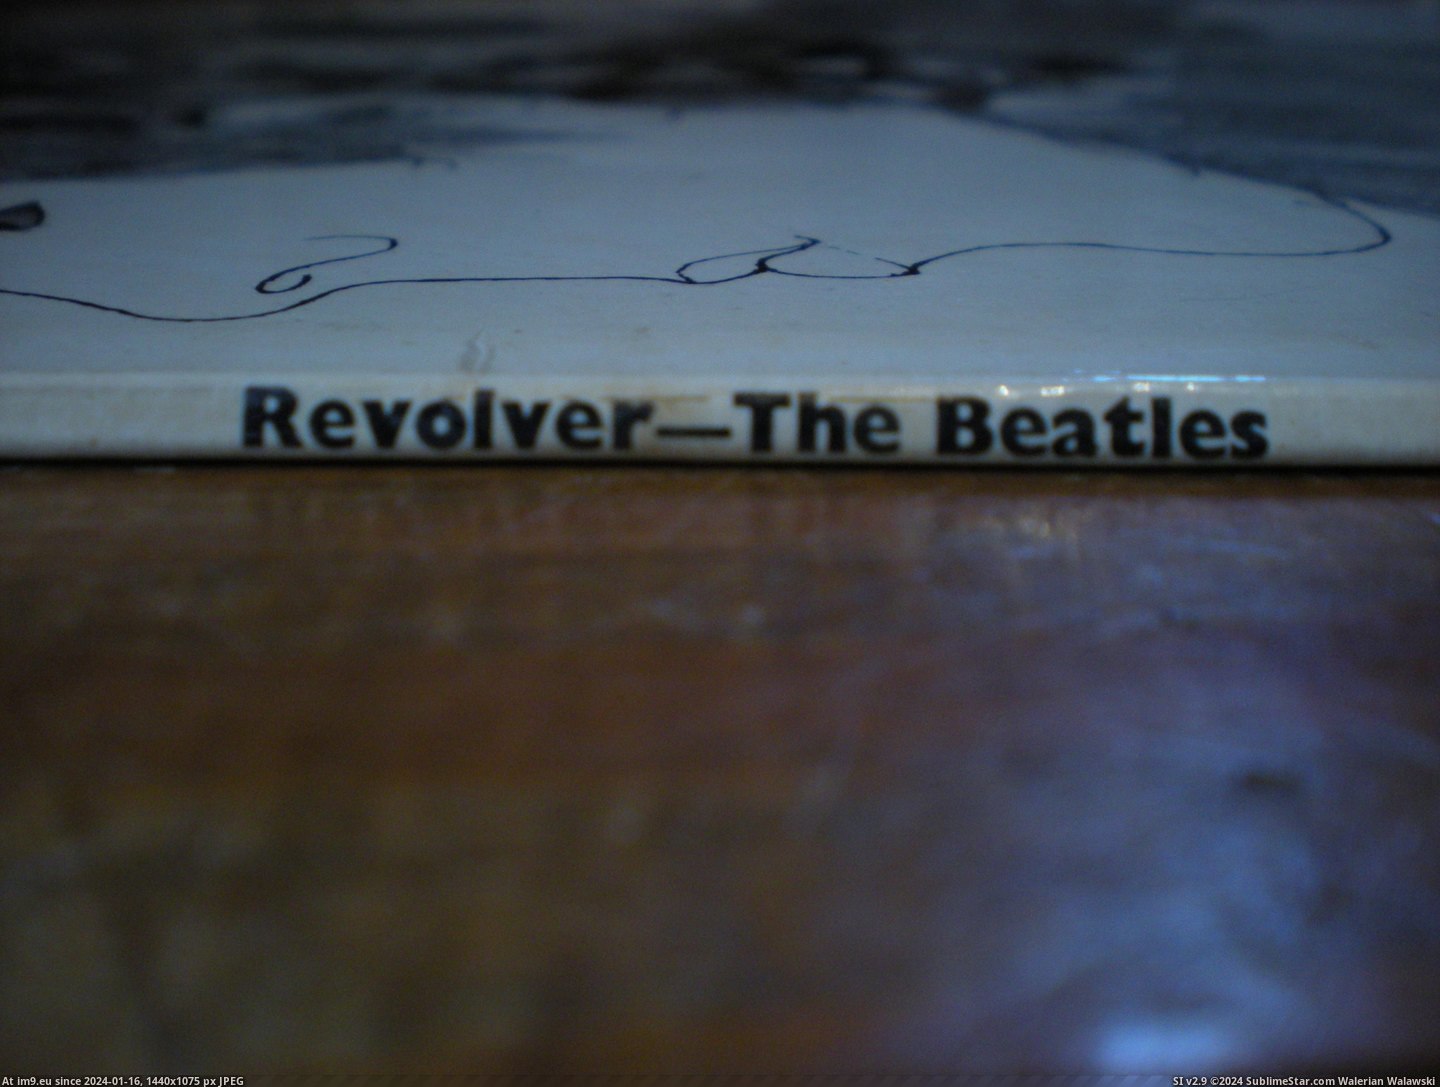  #Revolver  Revolver-2-2 8 Pic. (Bild von album new 1))